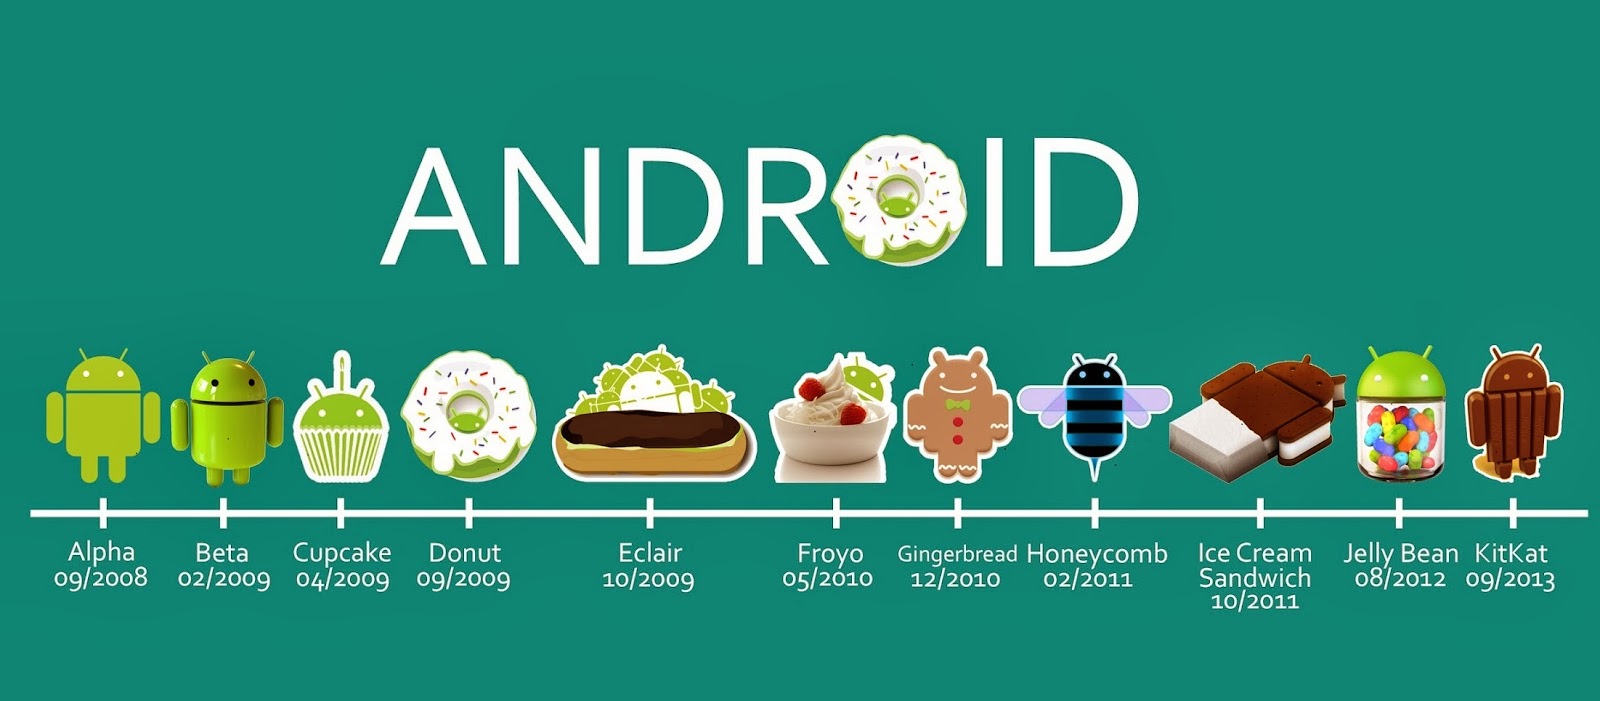 Tên gọi của các phiên bản Android qua từng thời kỳ